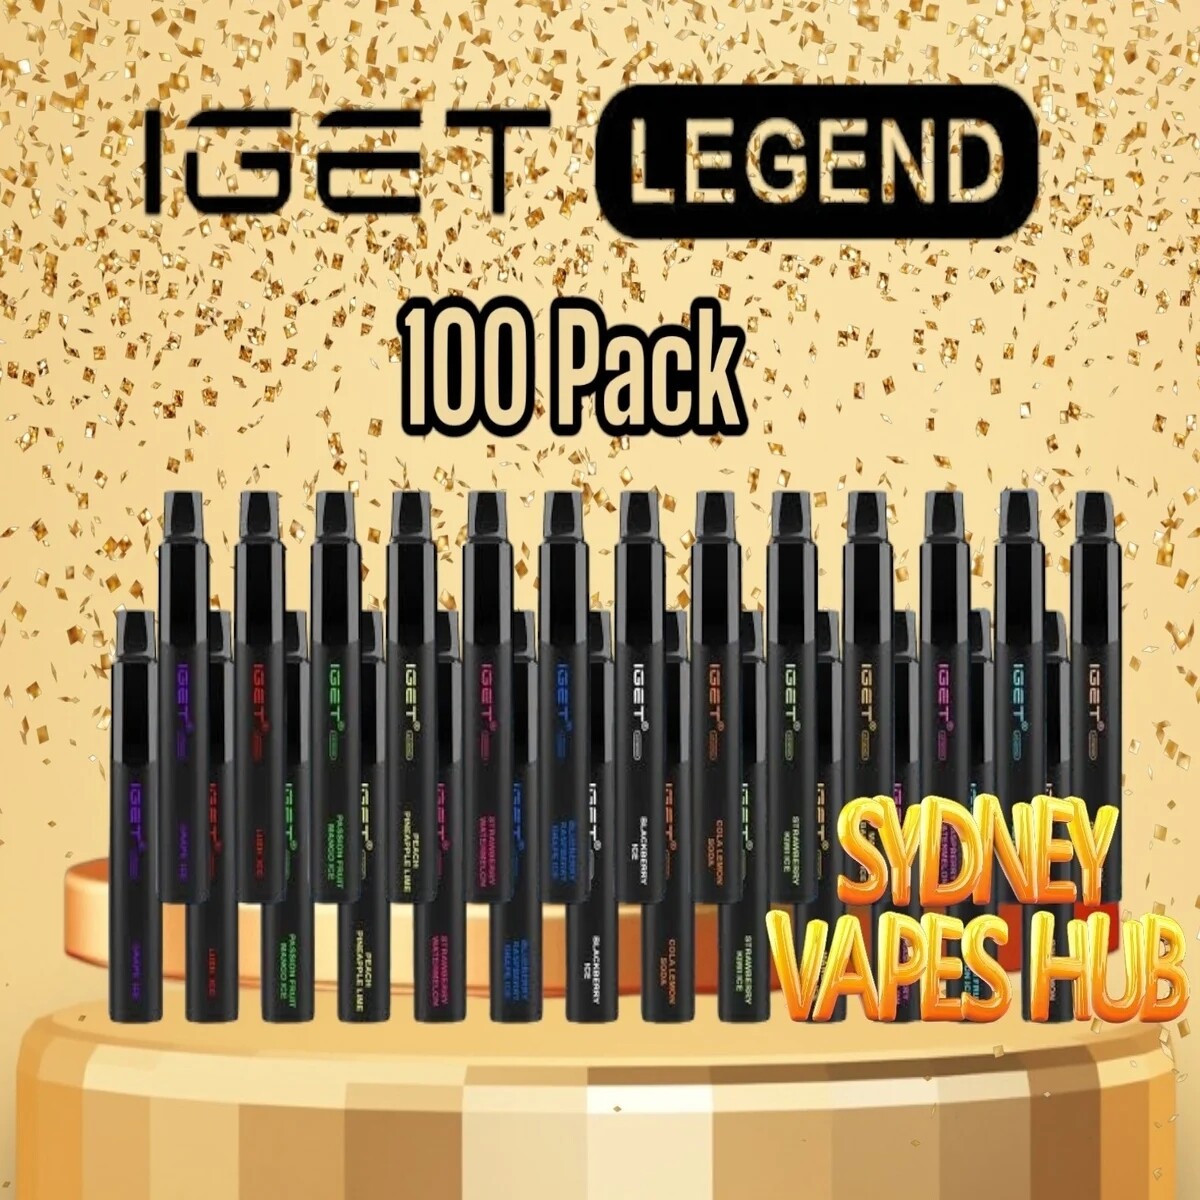 IGET Legend Wholesale 100 Pack 4000